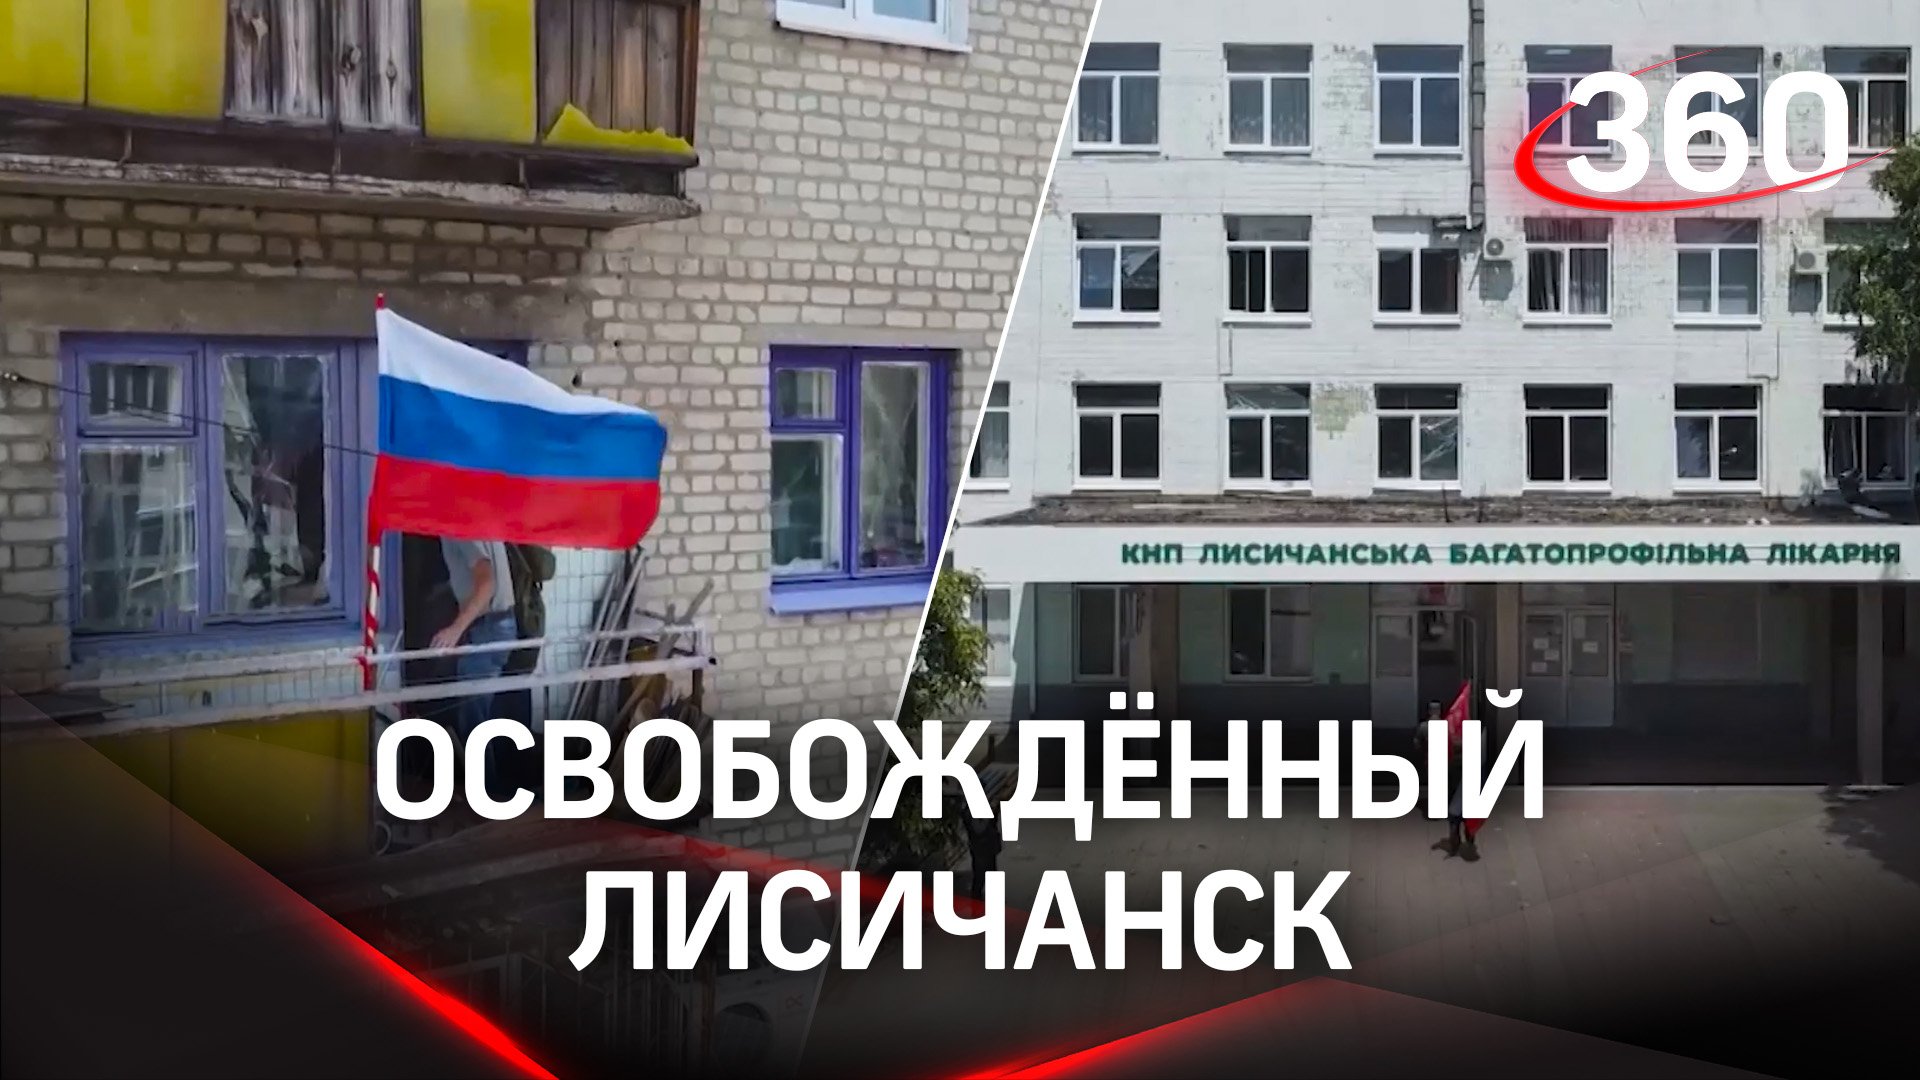 Первые кадры освобождённого Лисичанска. Репортаж на французском ТВ о счастливых жителях города